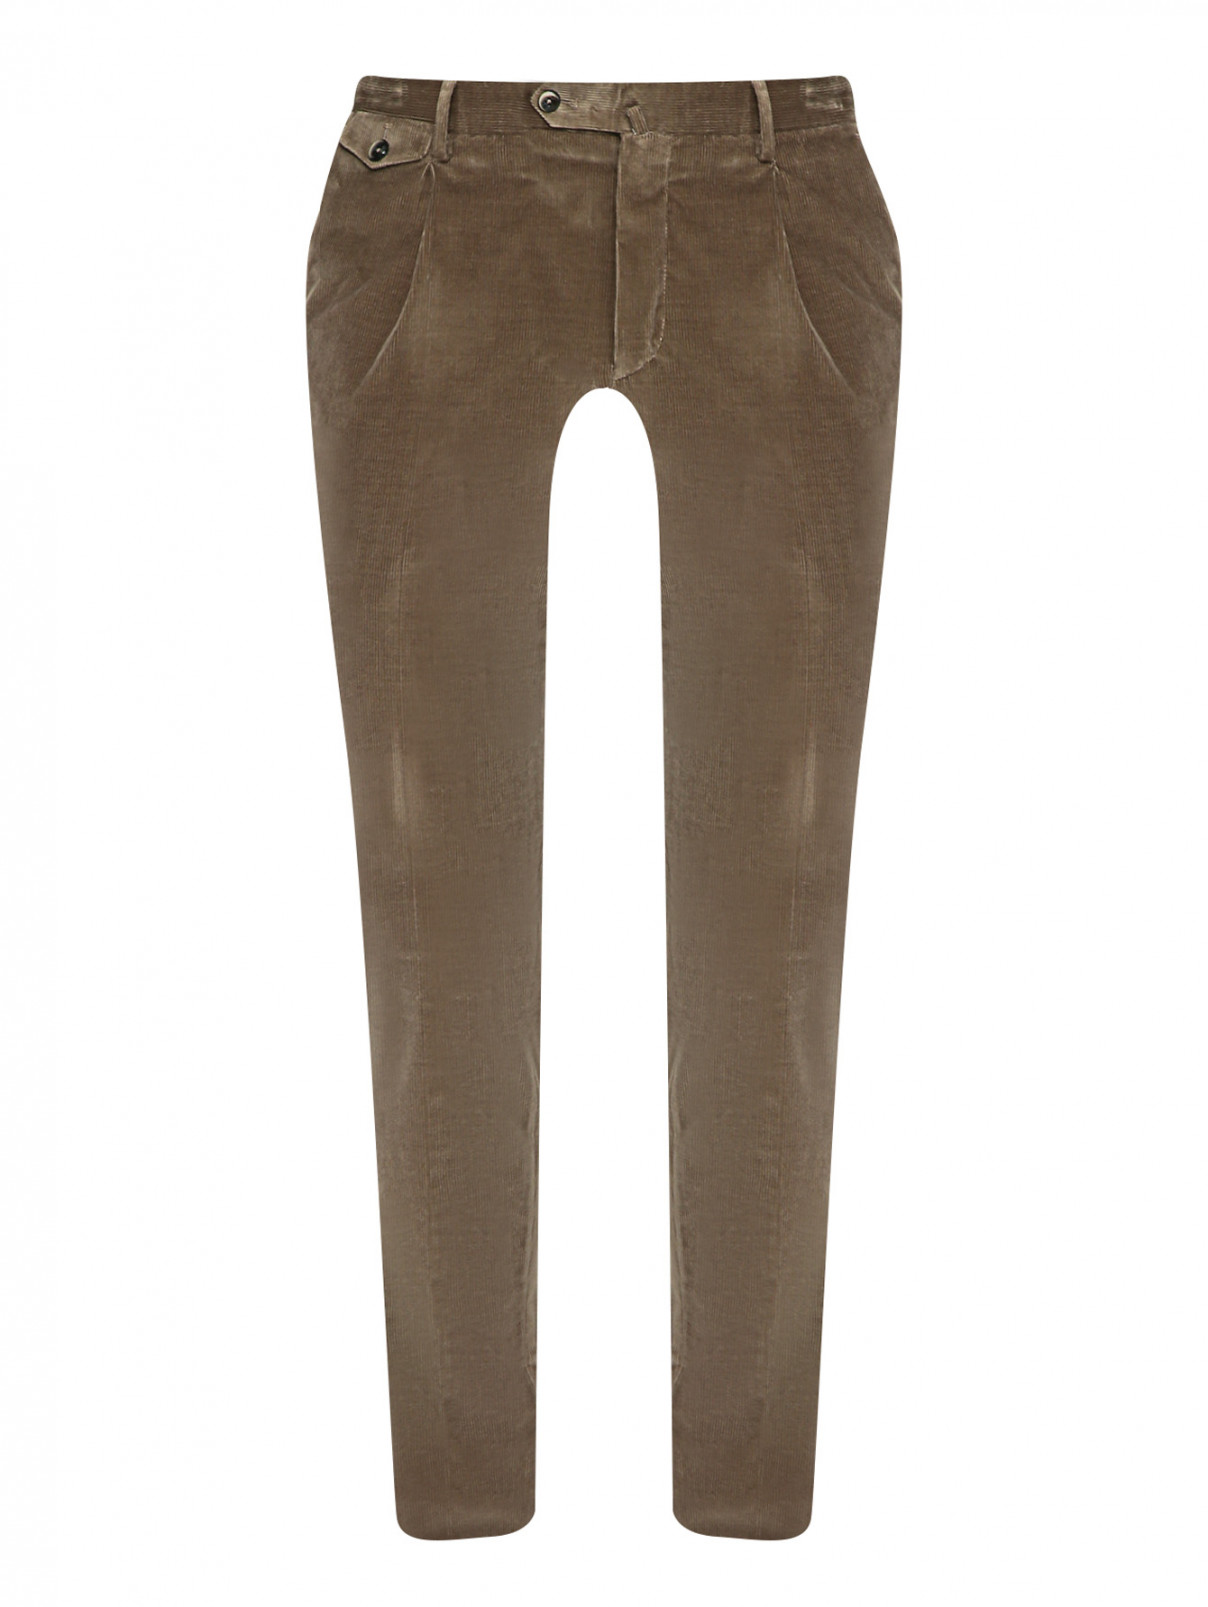 Вельветовые брюки зауженного кроя PT Torino  –  Общий вид  – Цвет:  Зеленый